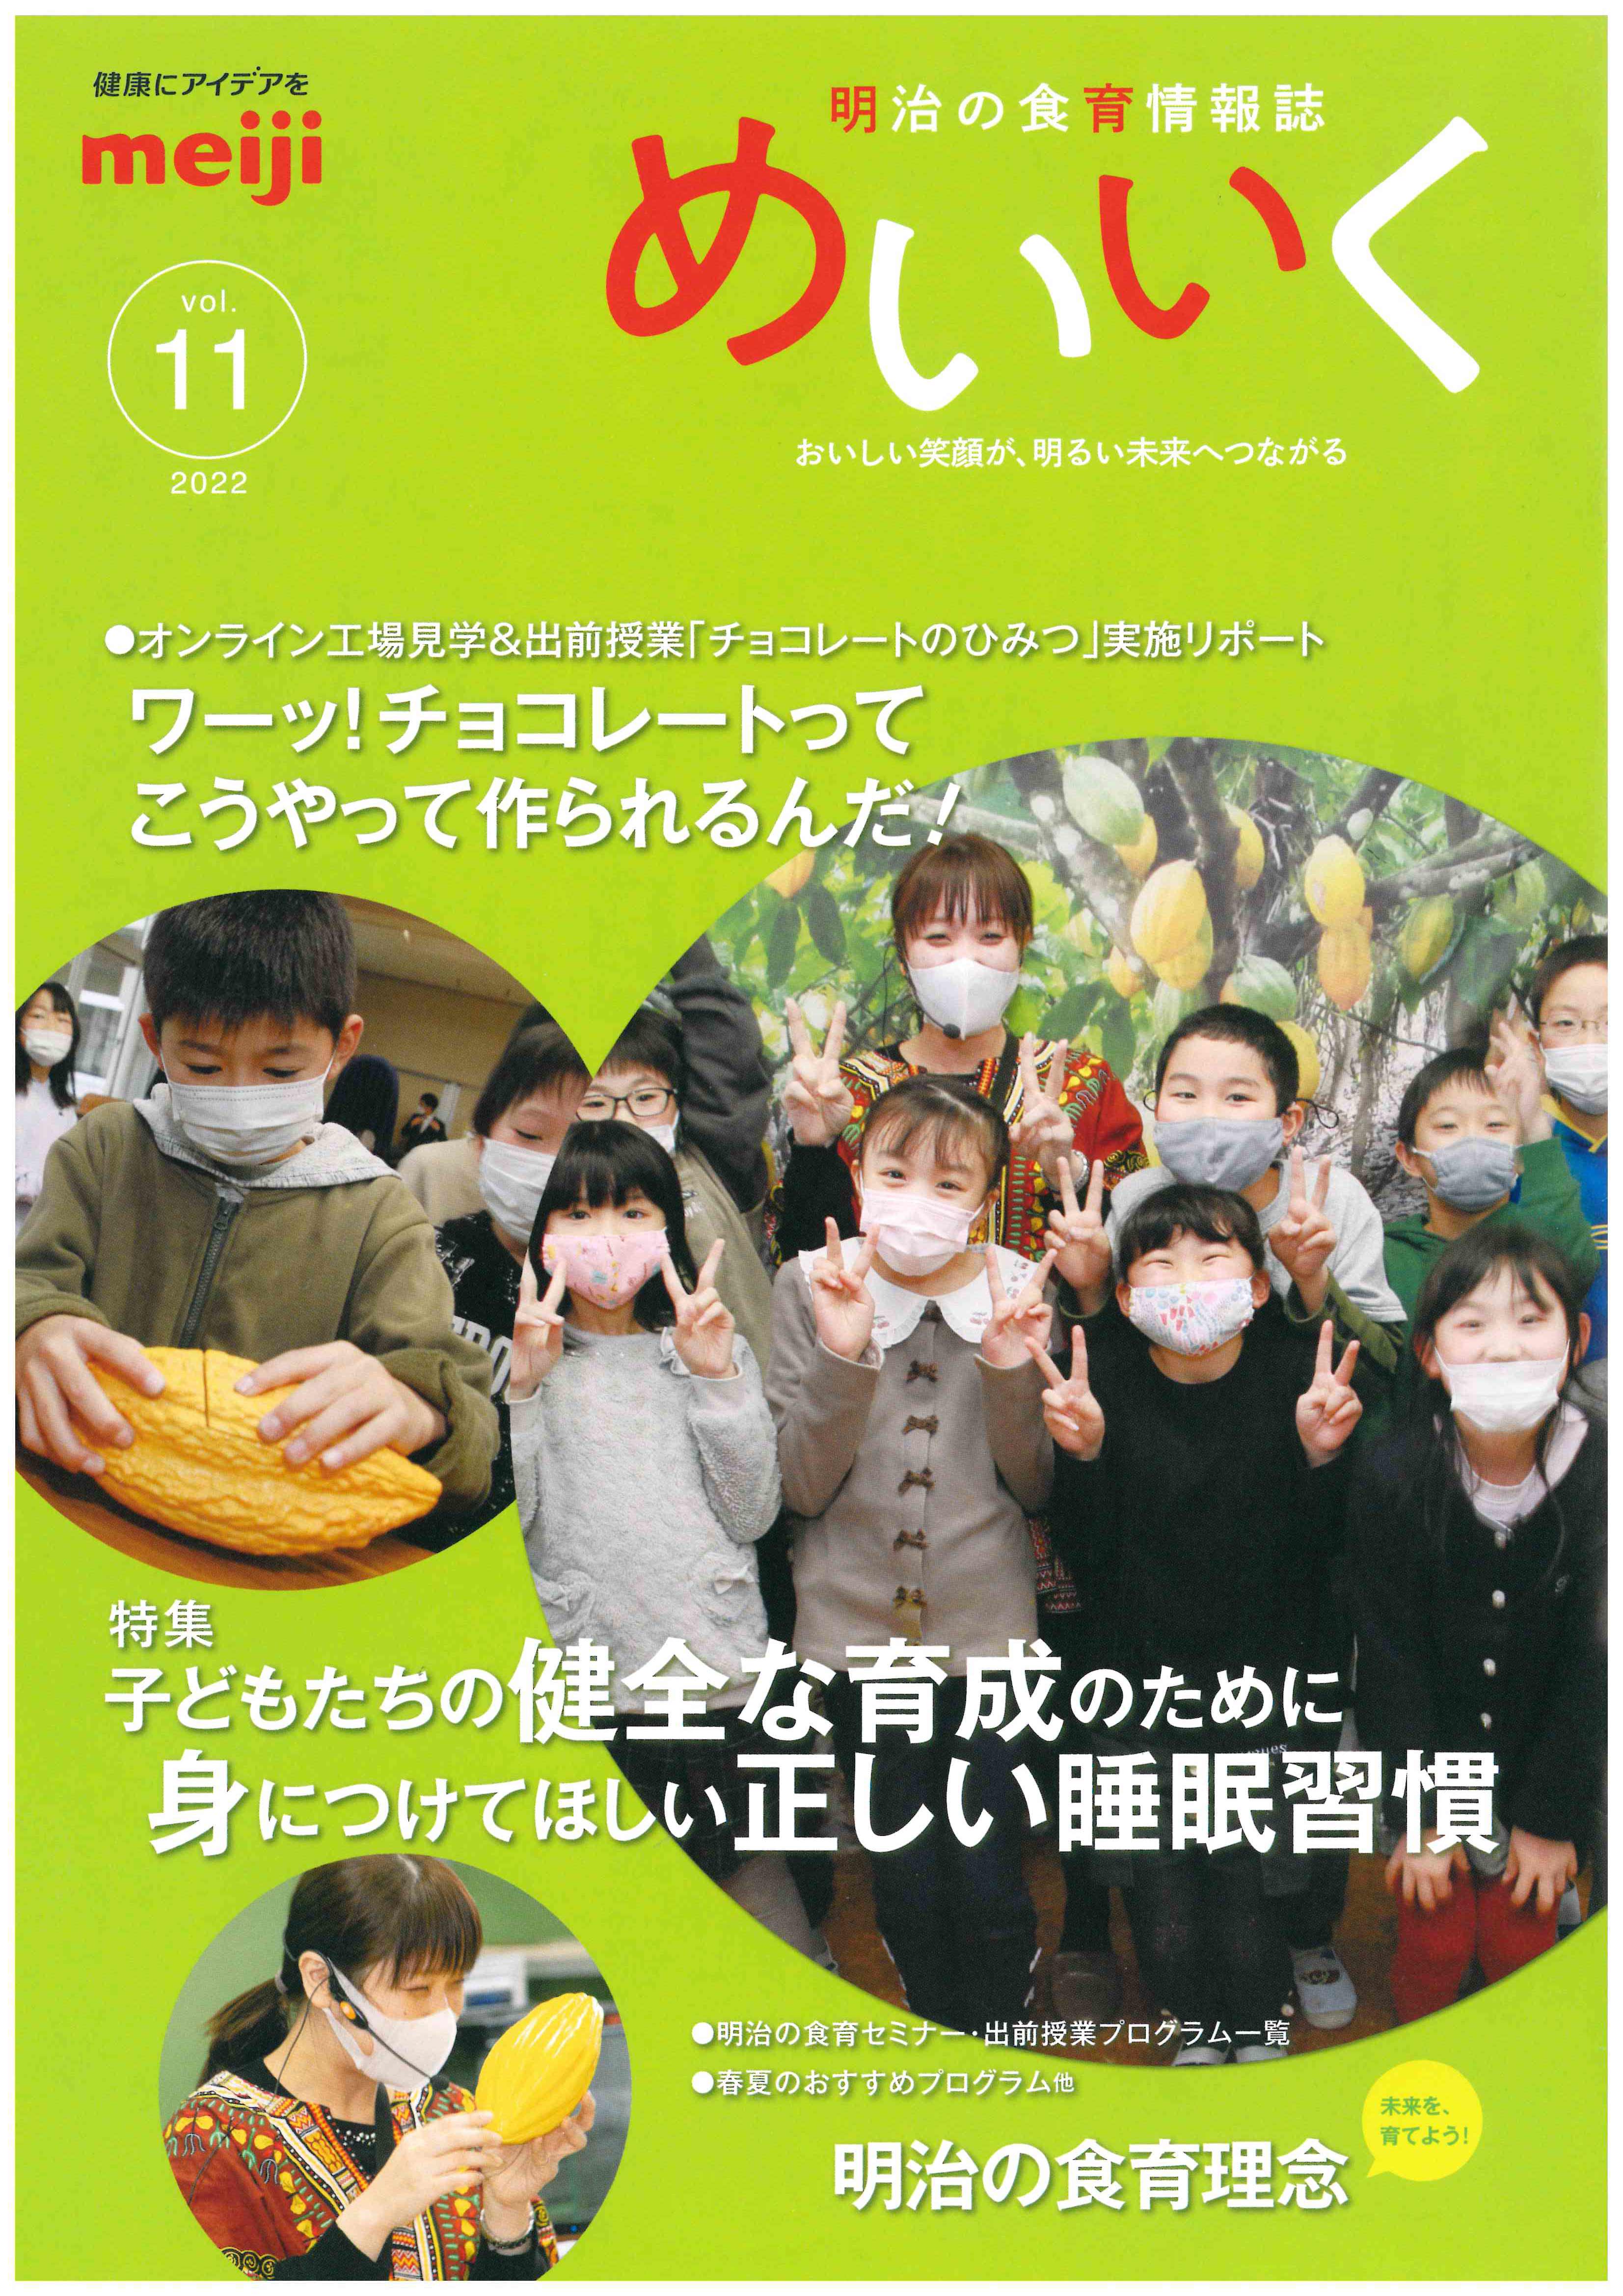 株式会社明治の食育情報誌「めいいく」に当院理事、大川匡子の記事が掲載されました